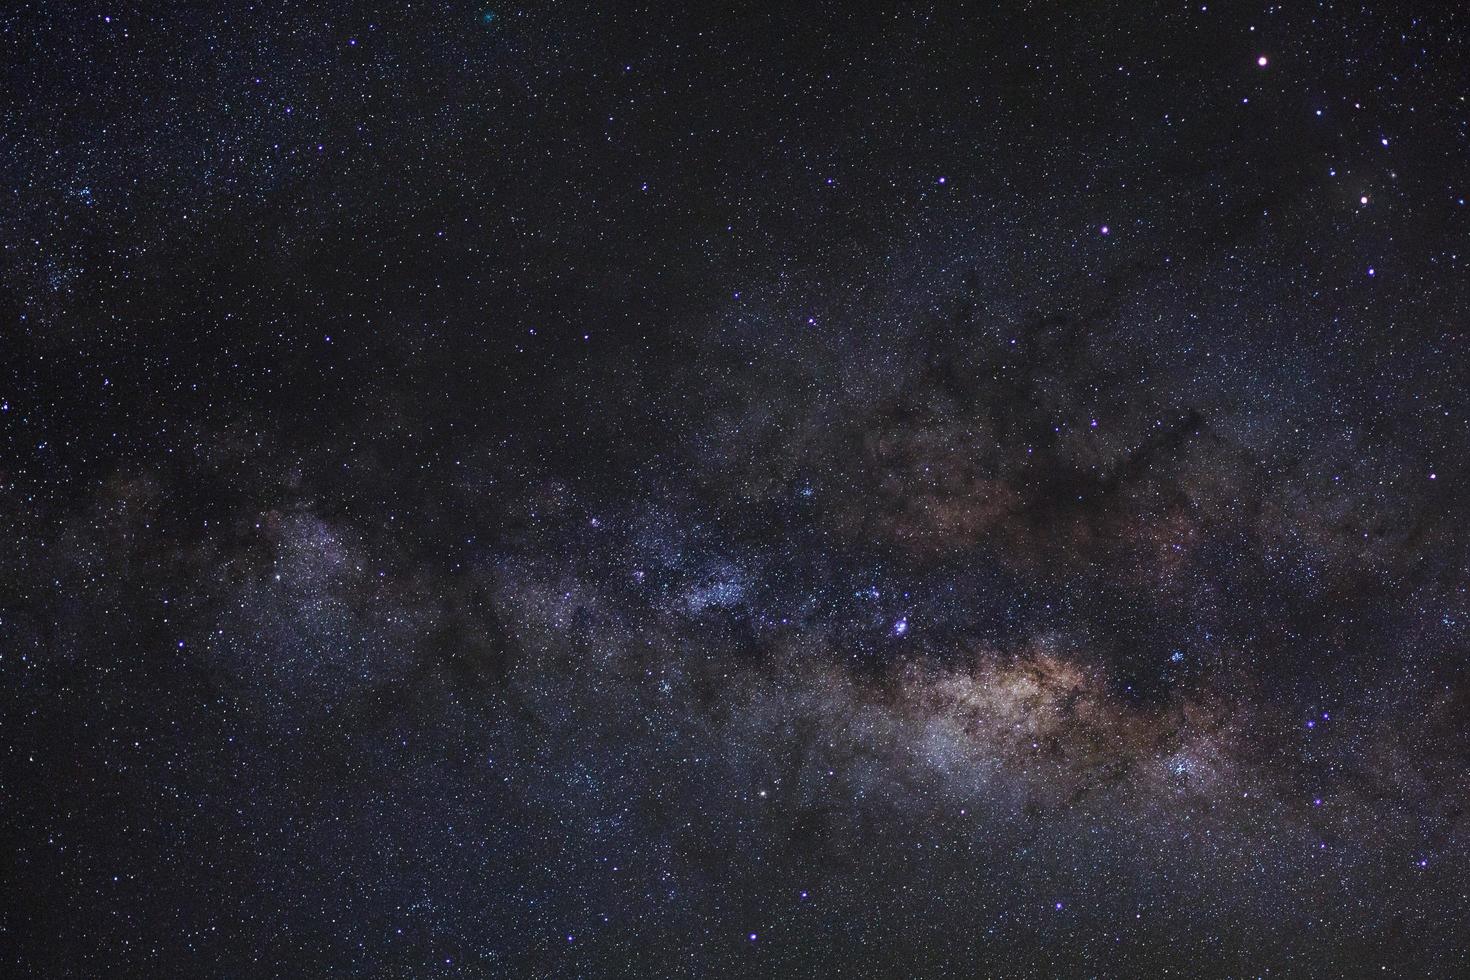 galaxia claramente vía láctea con estrellas y polvo espacial en el universo foto